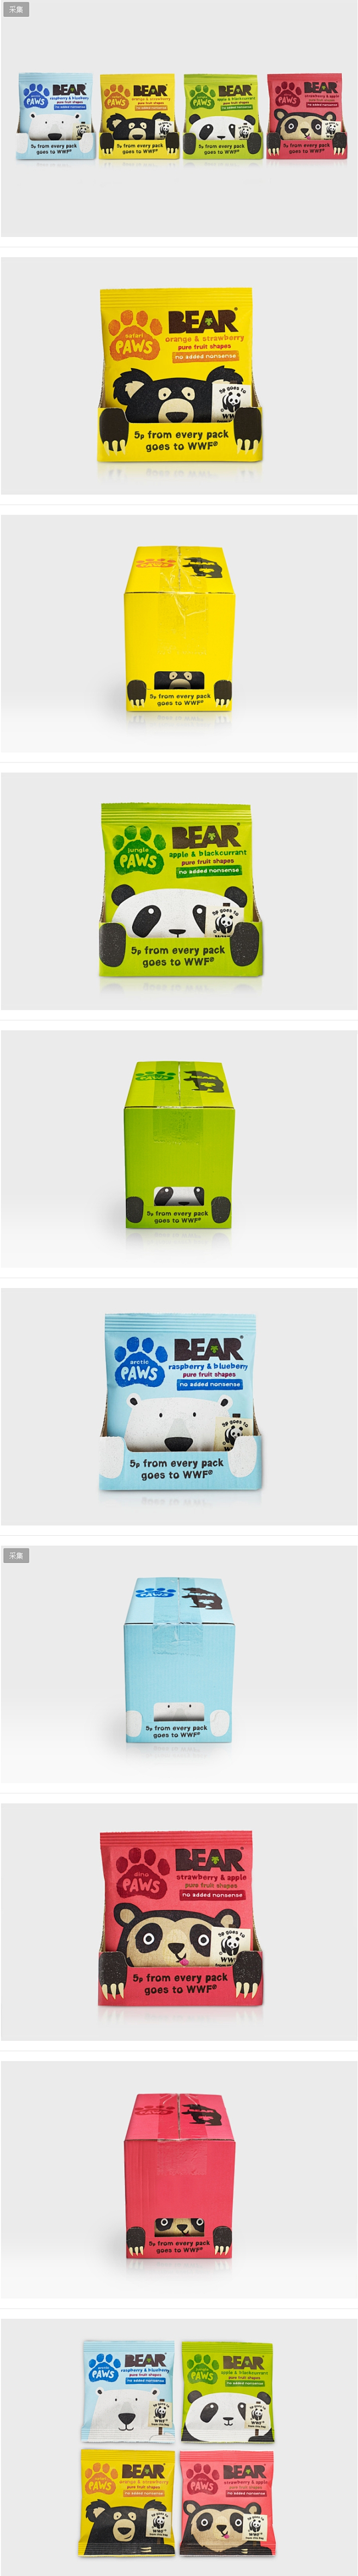 Bear Paws食品包装设计//B&B...